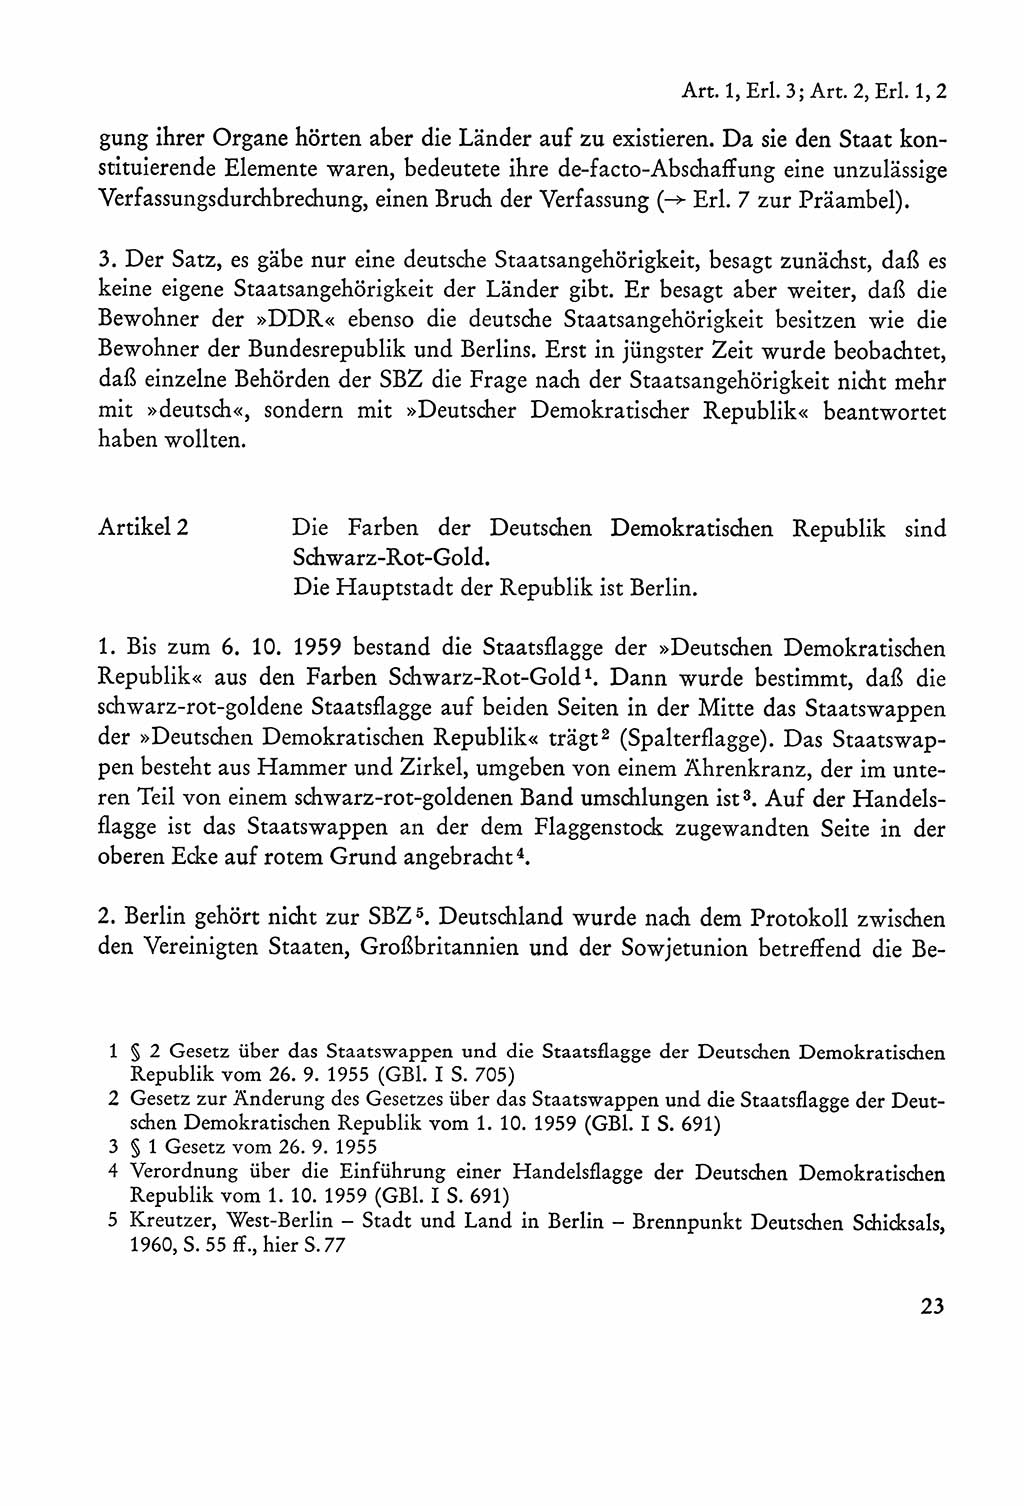 Verfassung der Sowjetischen Besatzungszone (SBZ) Deutschlands [Deutsche Demokratische Republik (DDR)], Text und Kommentar [Bundesrepublik Deutschland (BRD)] 1962, Seite 23 (Verf. SBZ Dtl. DDR Komm. BRD 1962, S. 23)